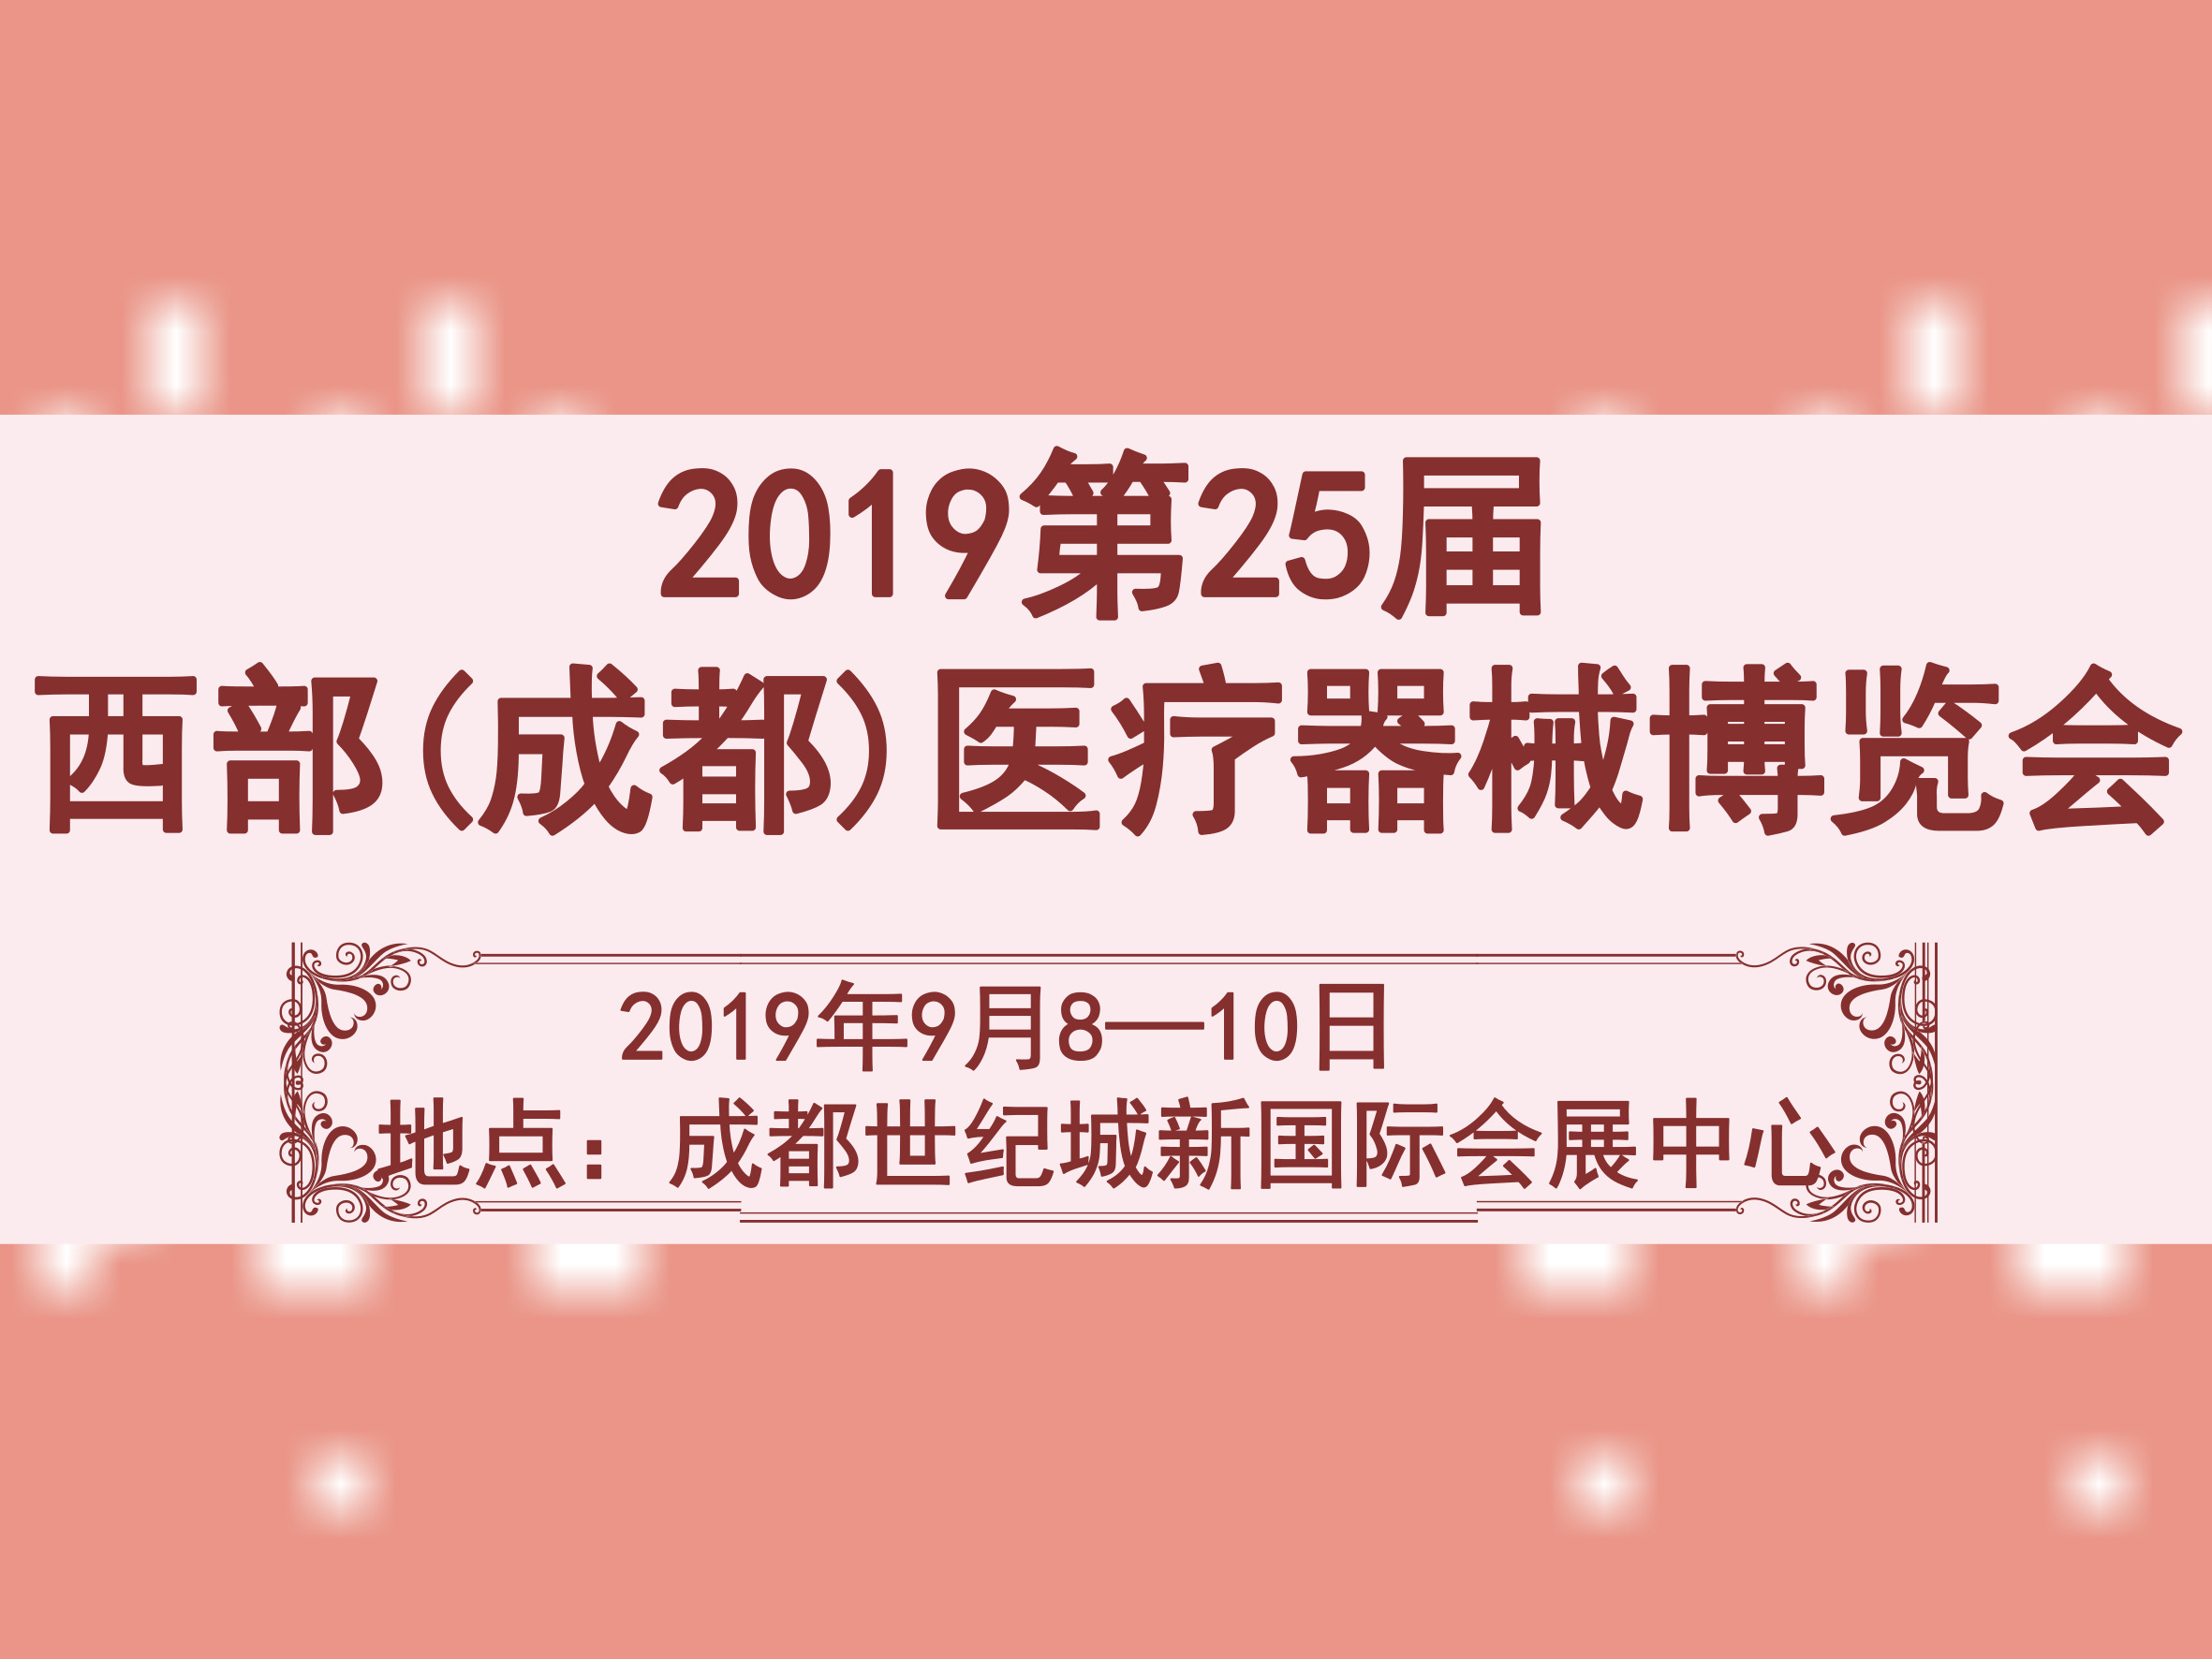 2019第25届西部(成都)医疗器械博览会